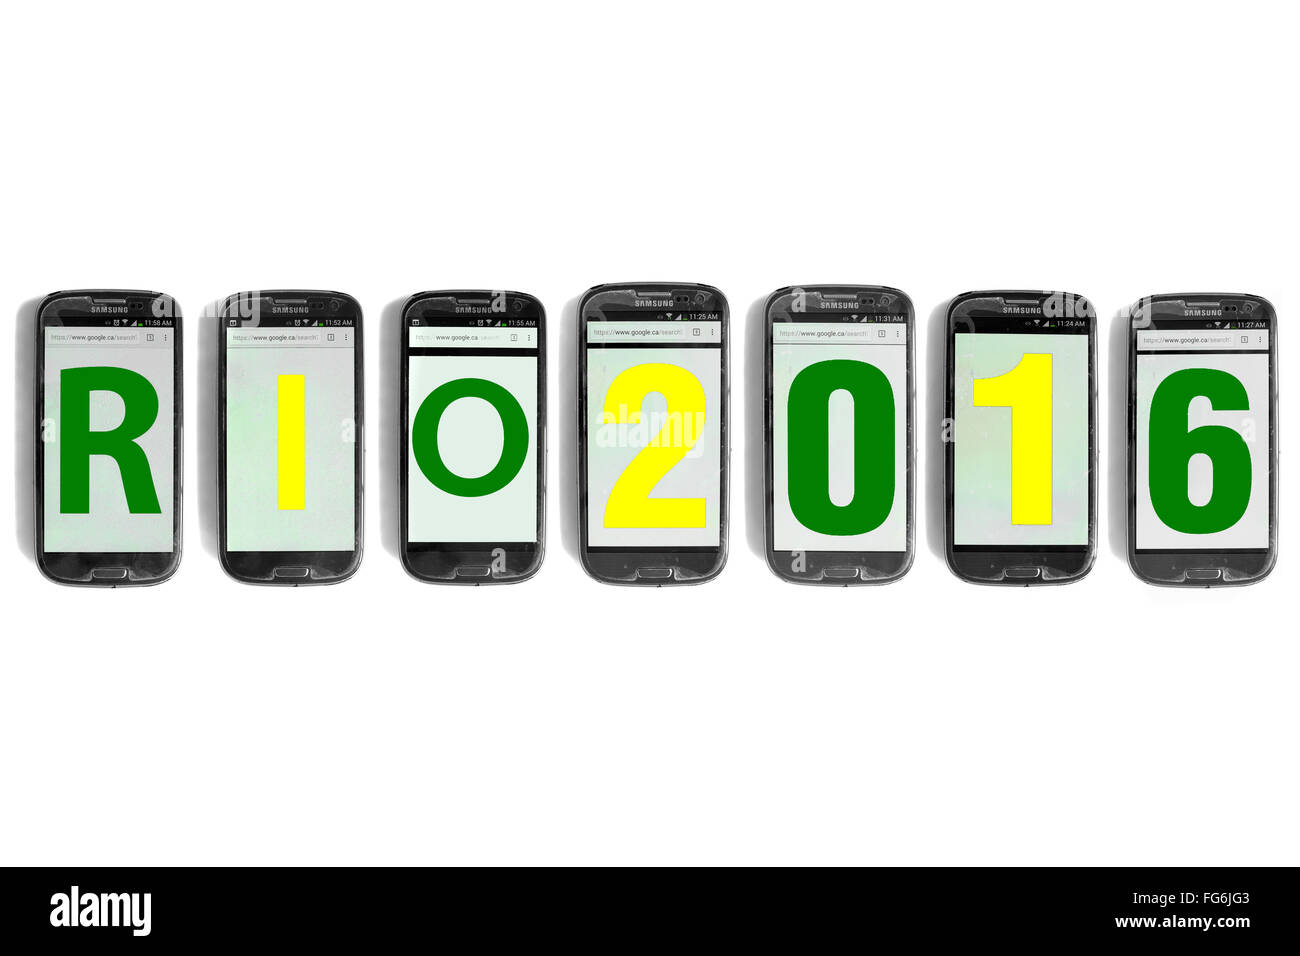 Rio2016 geschrieben am Smartphone Bildschirme vor weißem Hintergrund fotografiert. Stockfoto